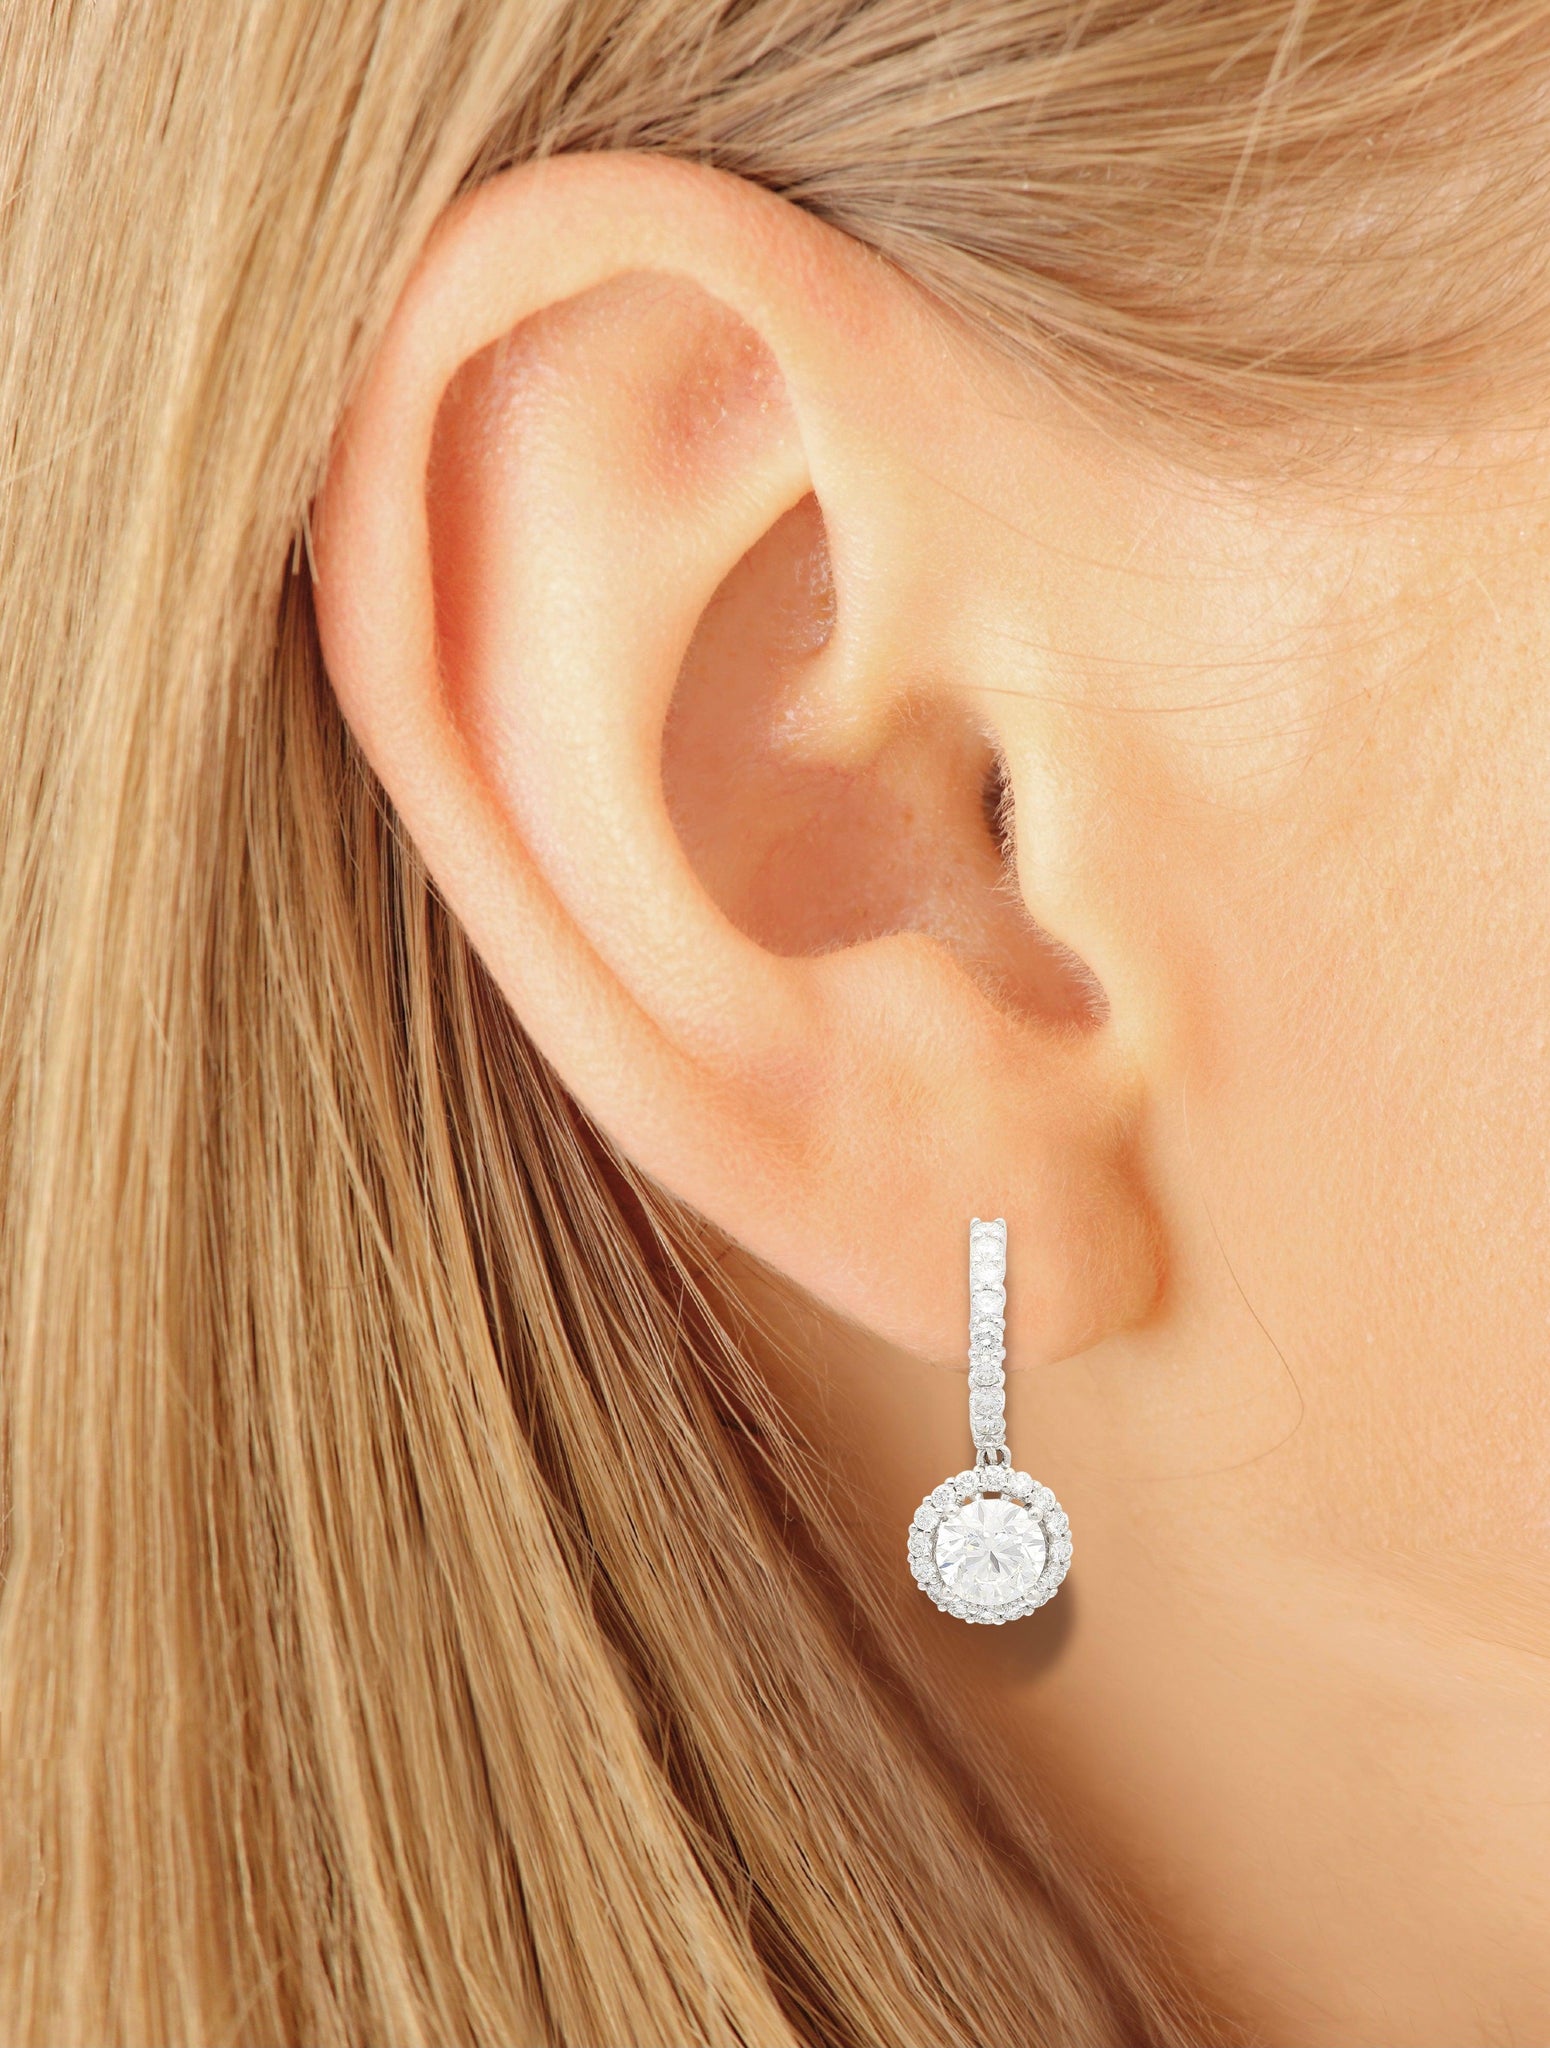 GIA Certified 3.7 Carat TW Natural Diamond Latch Back Dangle-Drop Earrings in 18K-Earrings-ASSAY